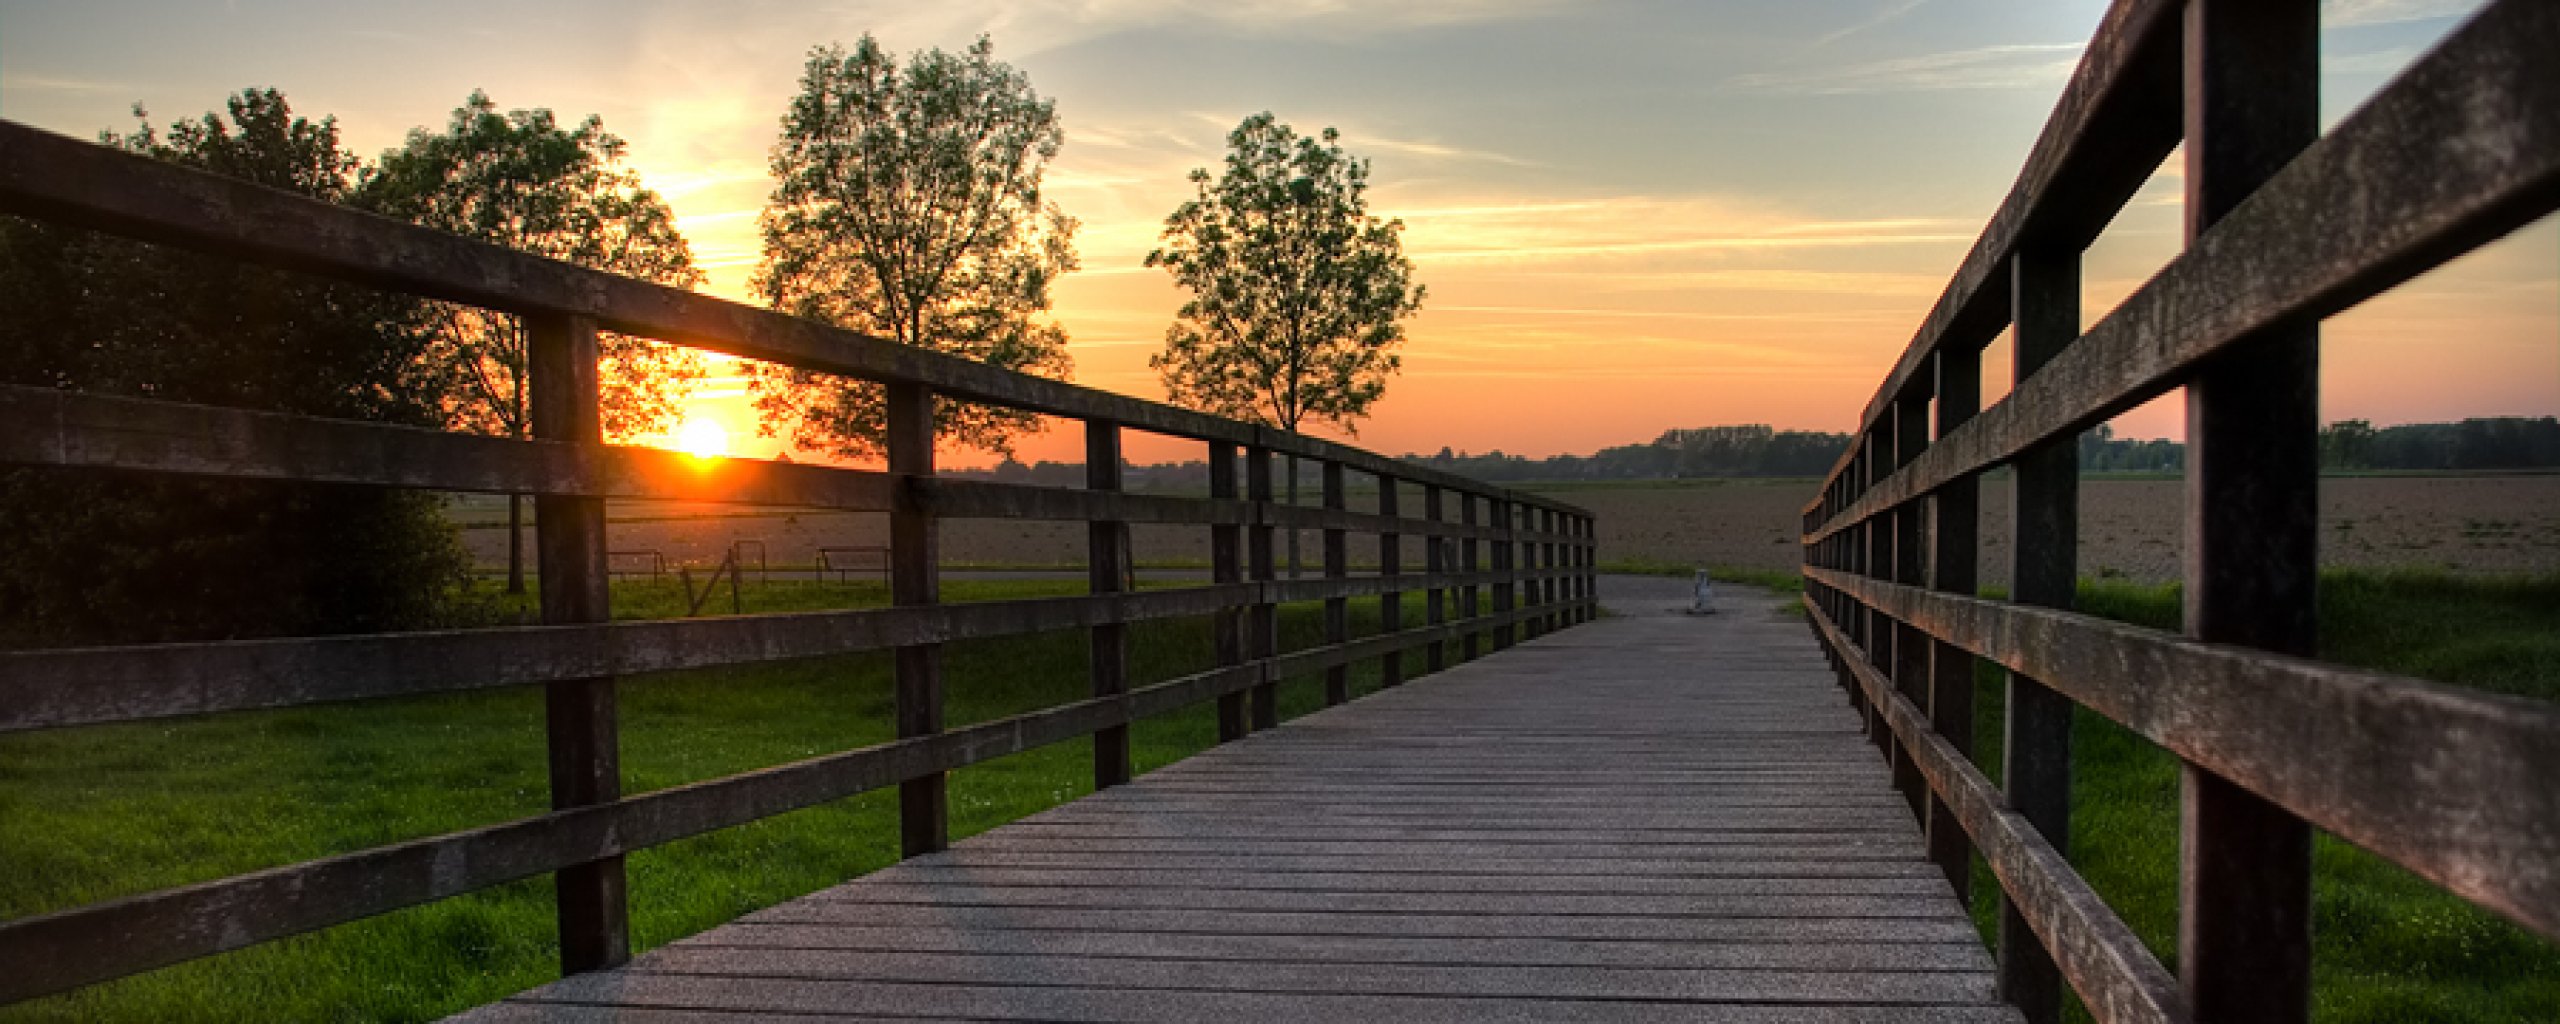 Een houten brug: de fietsbrug in Melick, met op de achtergrond gras, bomen en een zonsopkomst of zonsonderang.